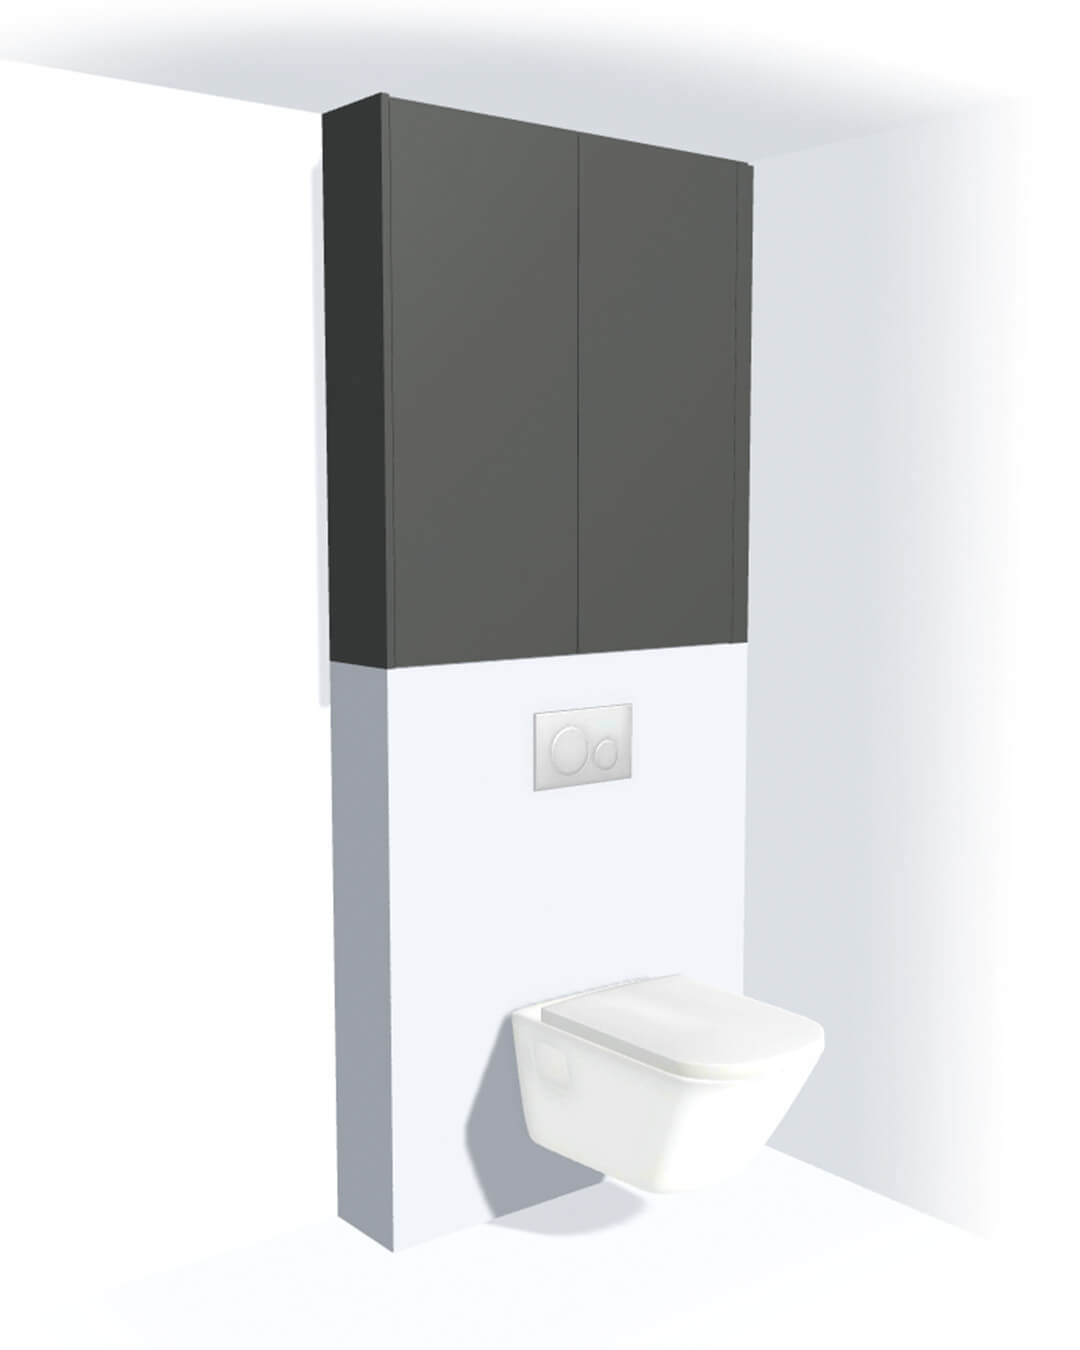 Toiletkast op maat boven wc op de muur in de kleur Quartz